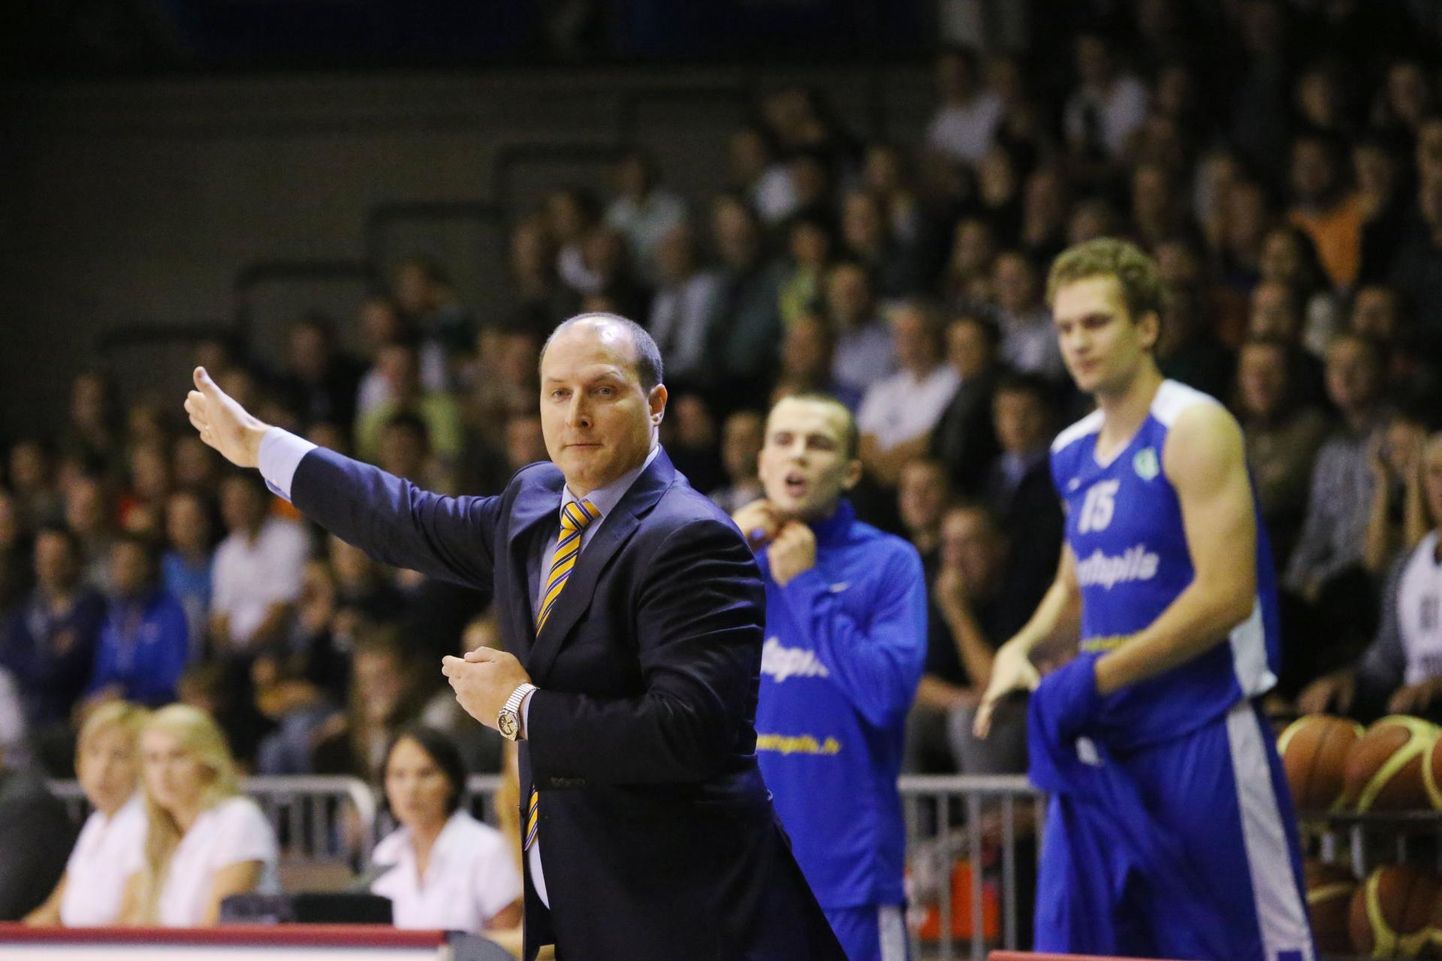 Roberts Štelmahers on valitud Läti korvpallikoondise uueks peatreeneriks